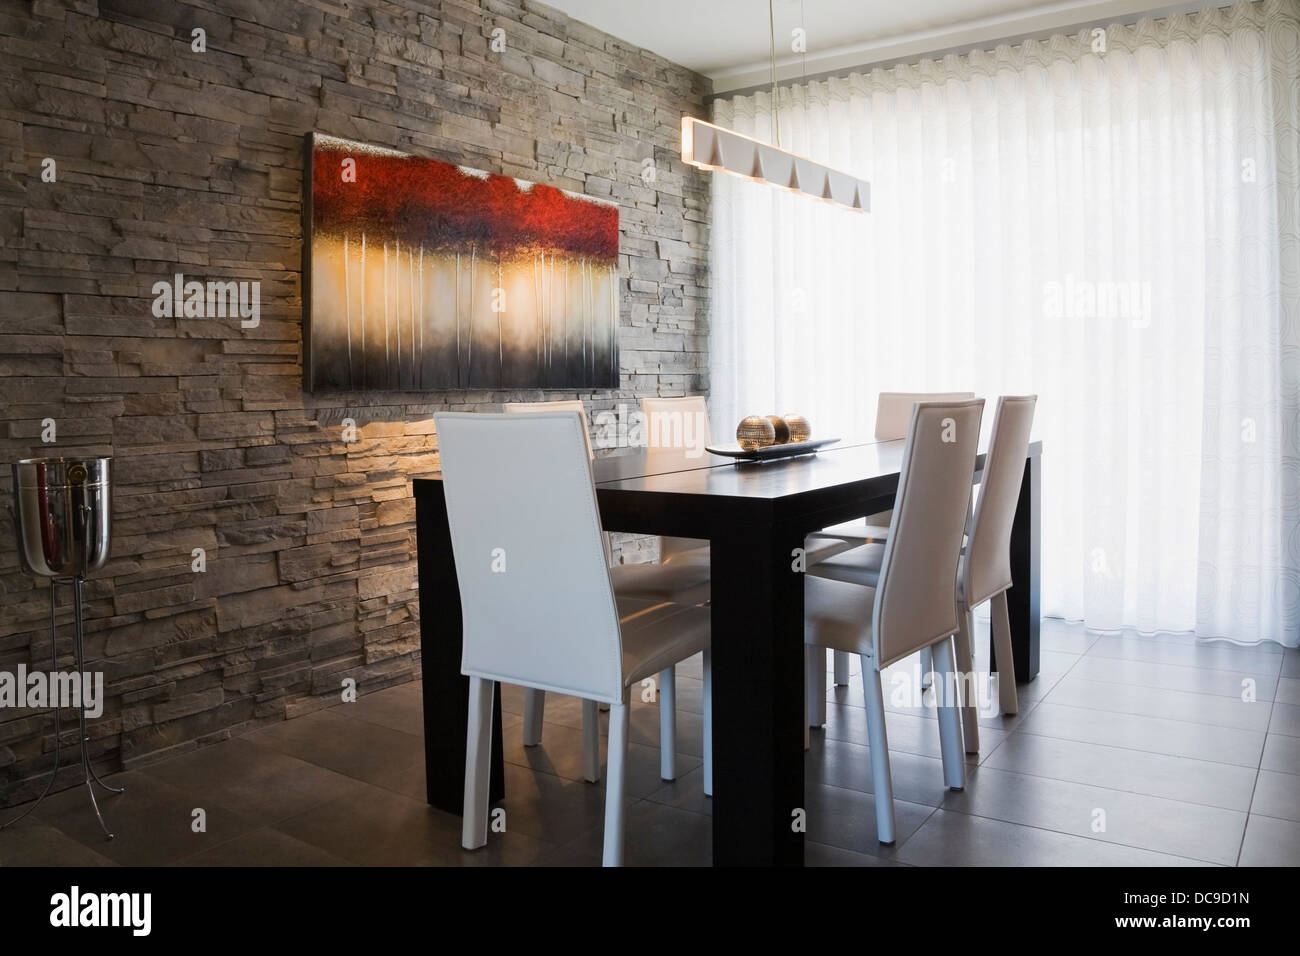 Comedor en el interior de una casa residencial moderna Foto de stock